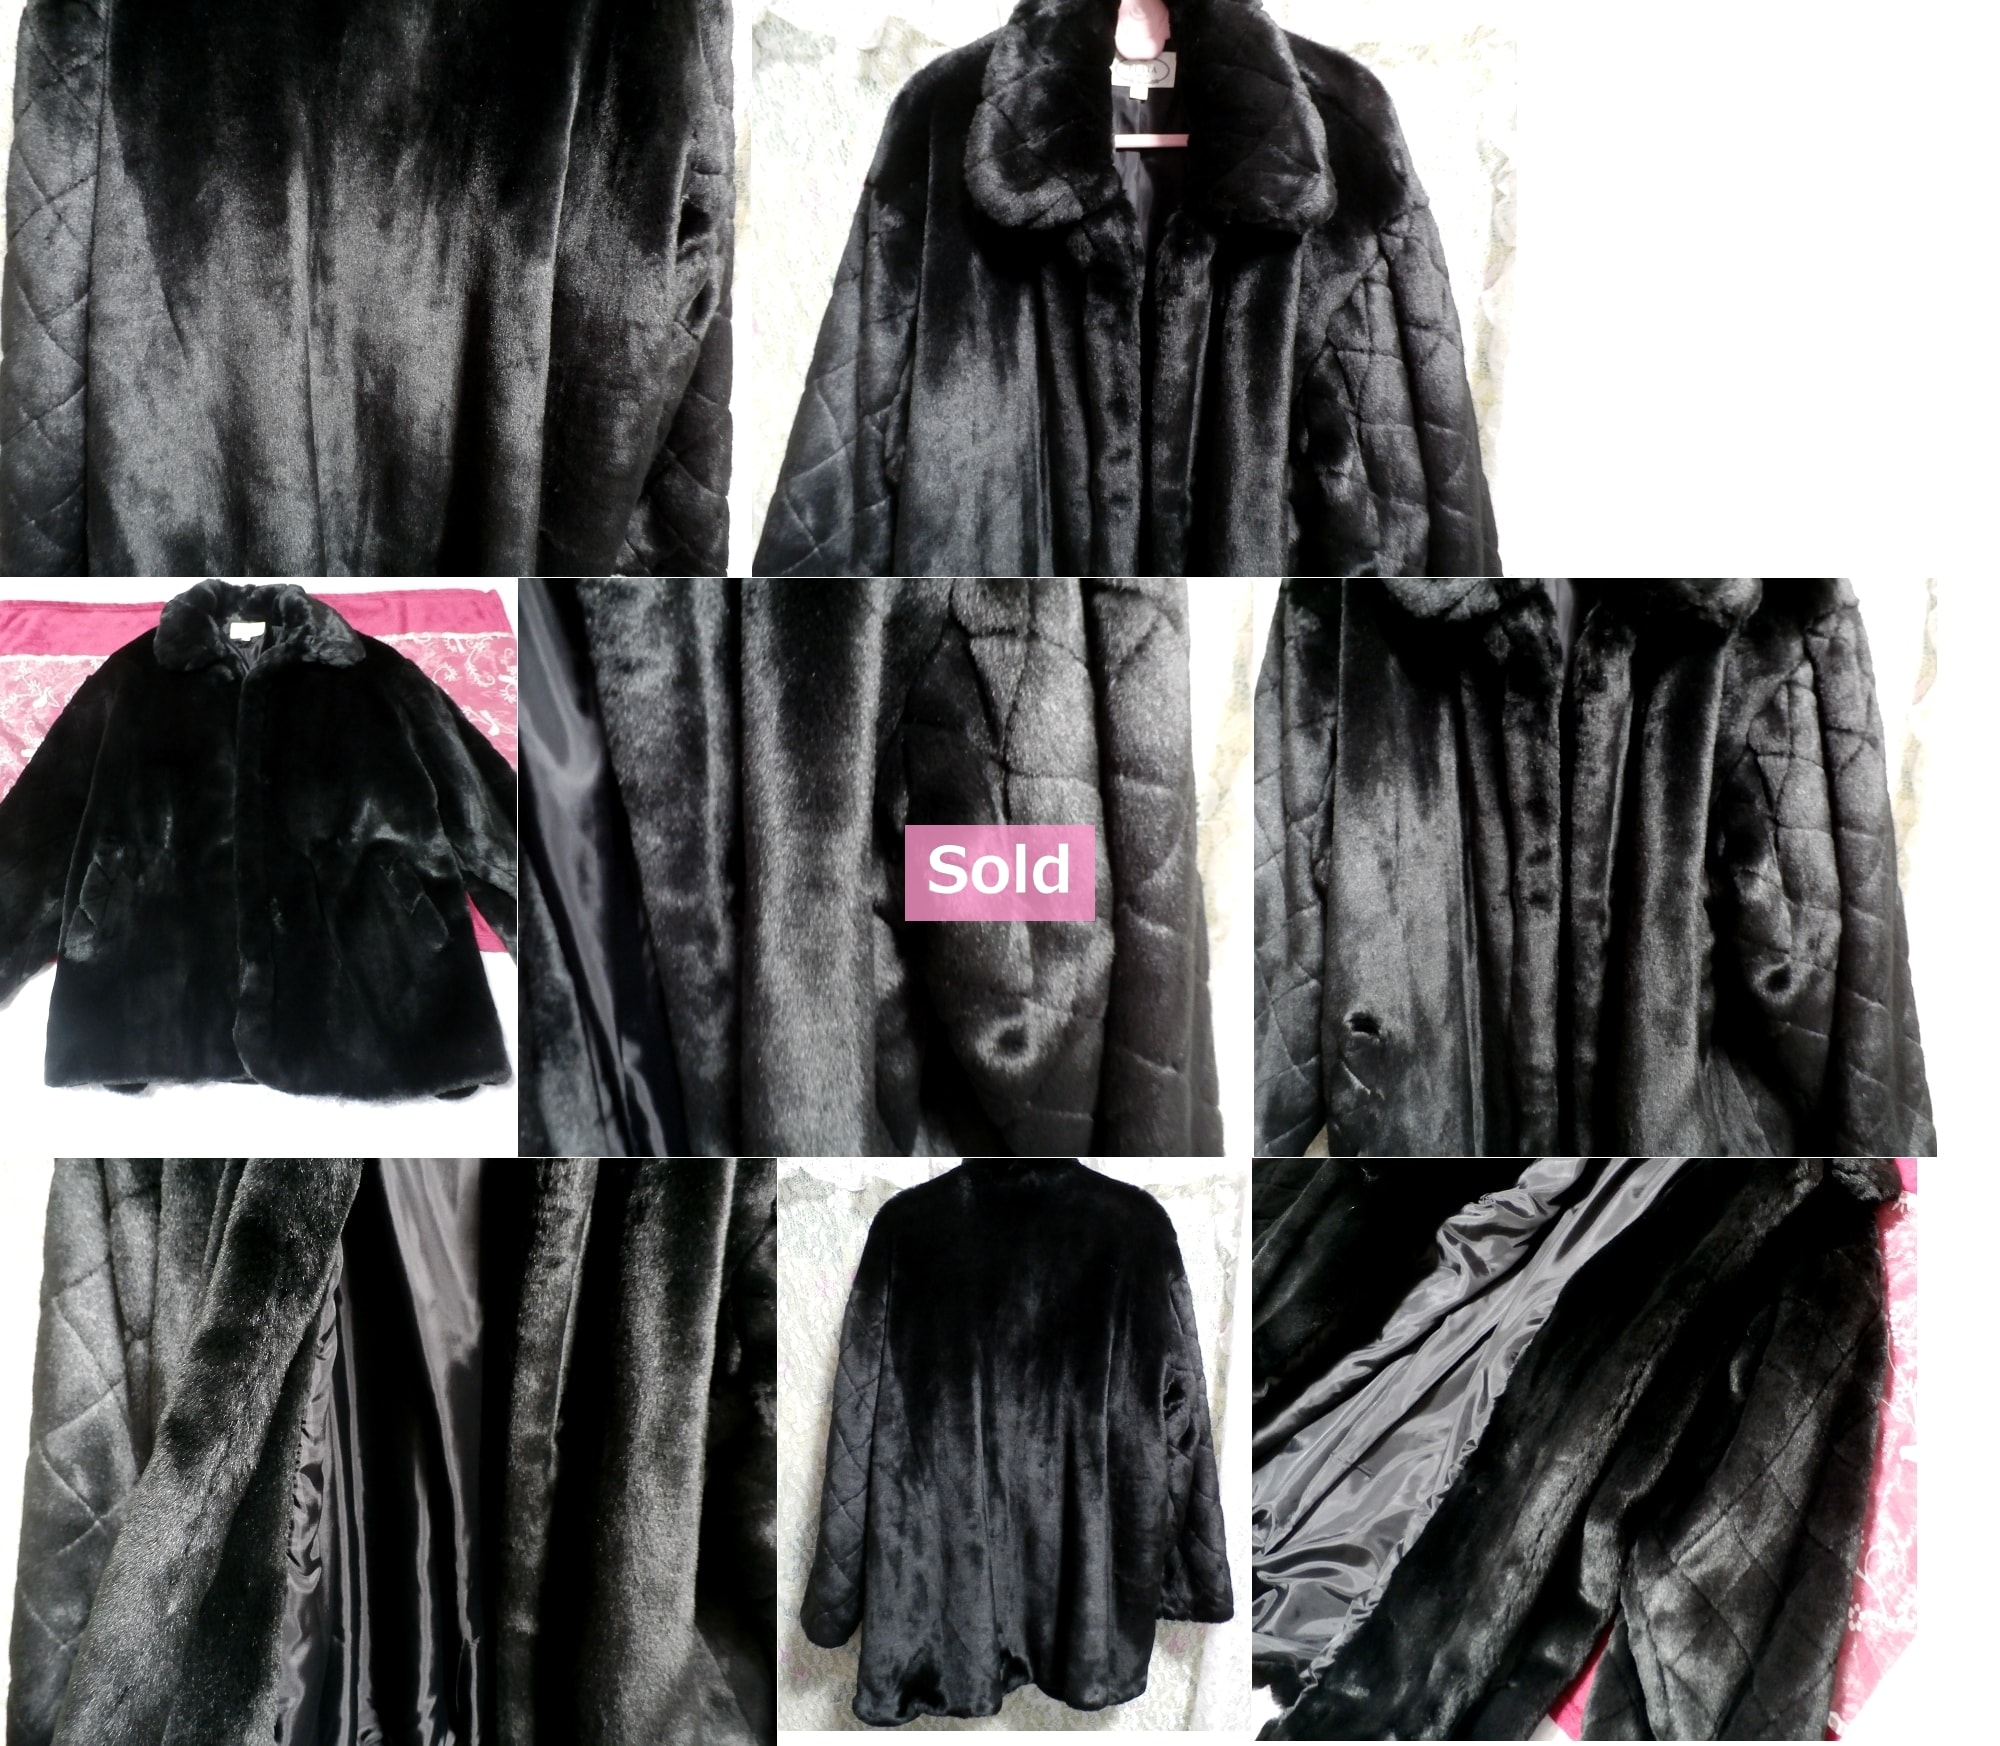 黒の豪華で綺麗なファーコート/外套 Black beautiful fur coat